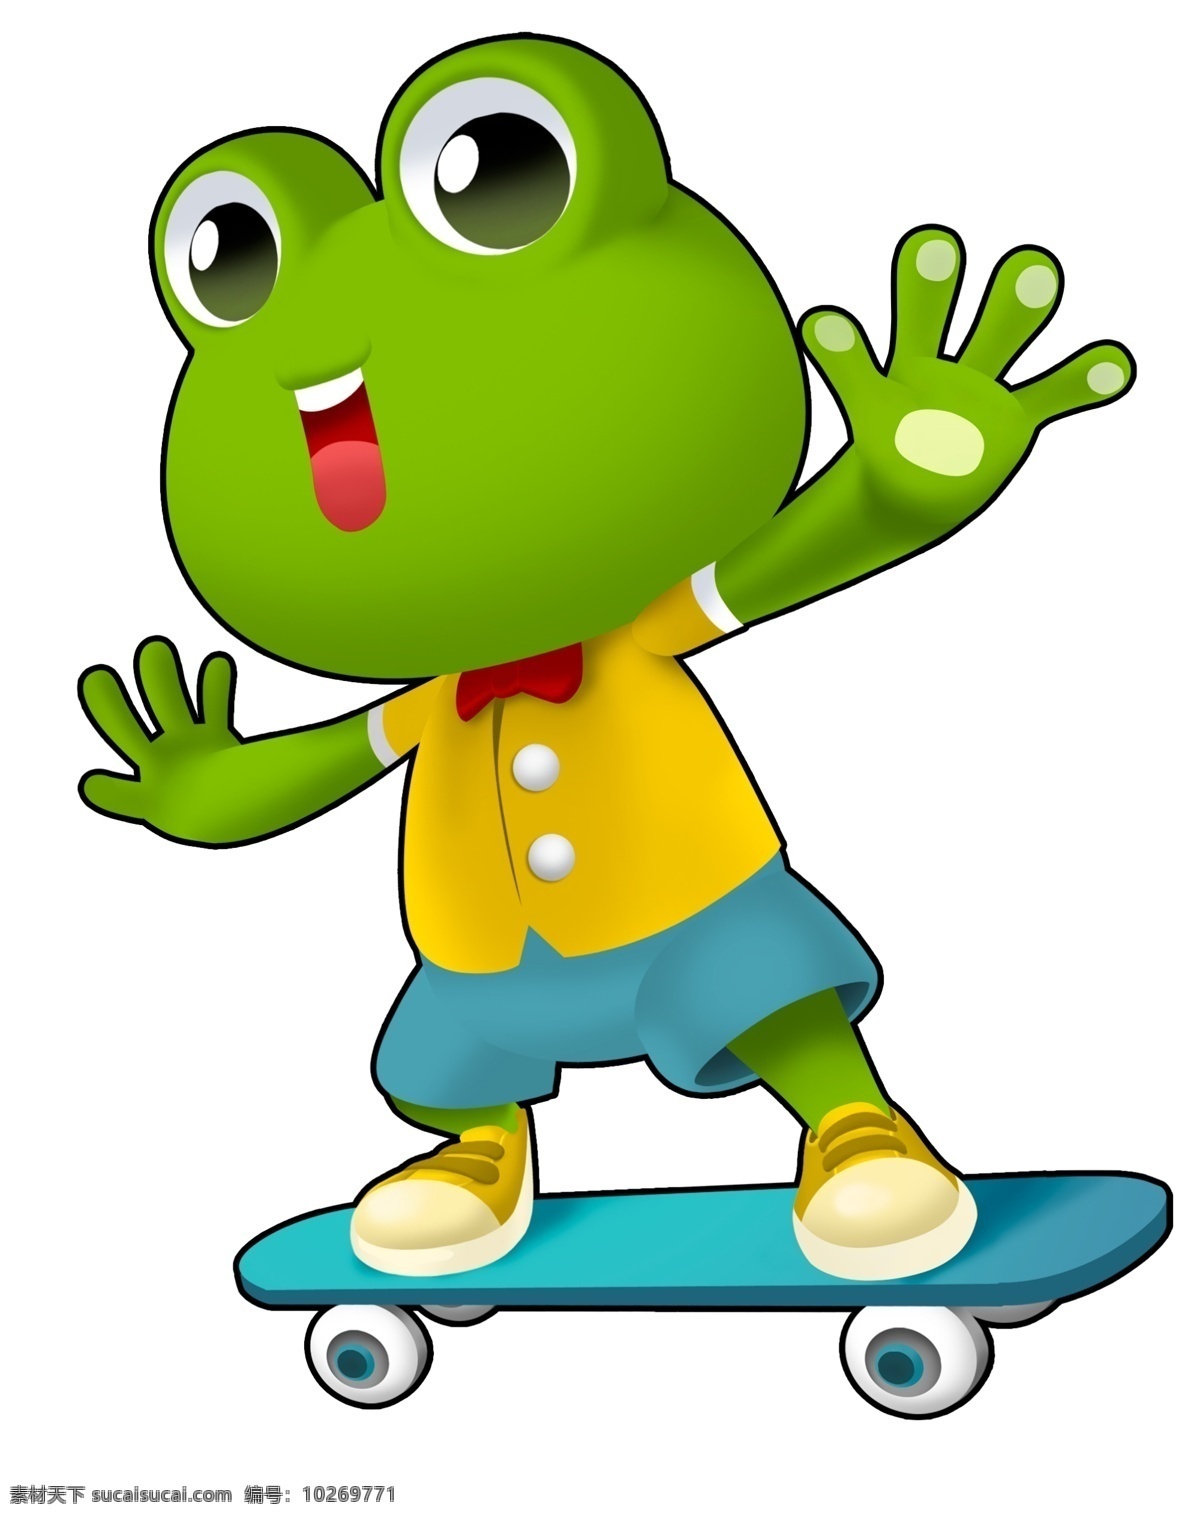 荷叶蛙标志 荷叶蛙 荷叶伞 青蛙滑板 可爱卡通 卡通动物 动漫卡通